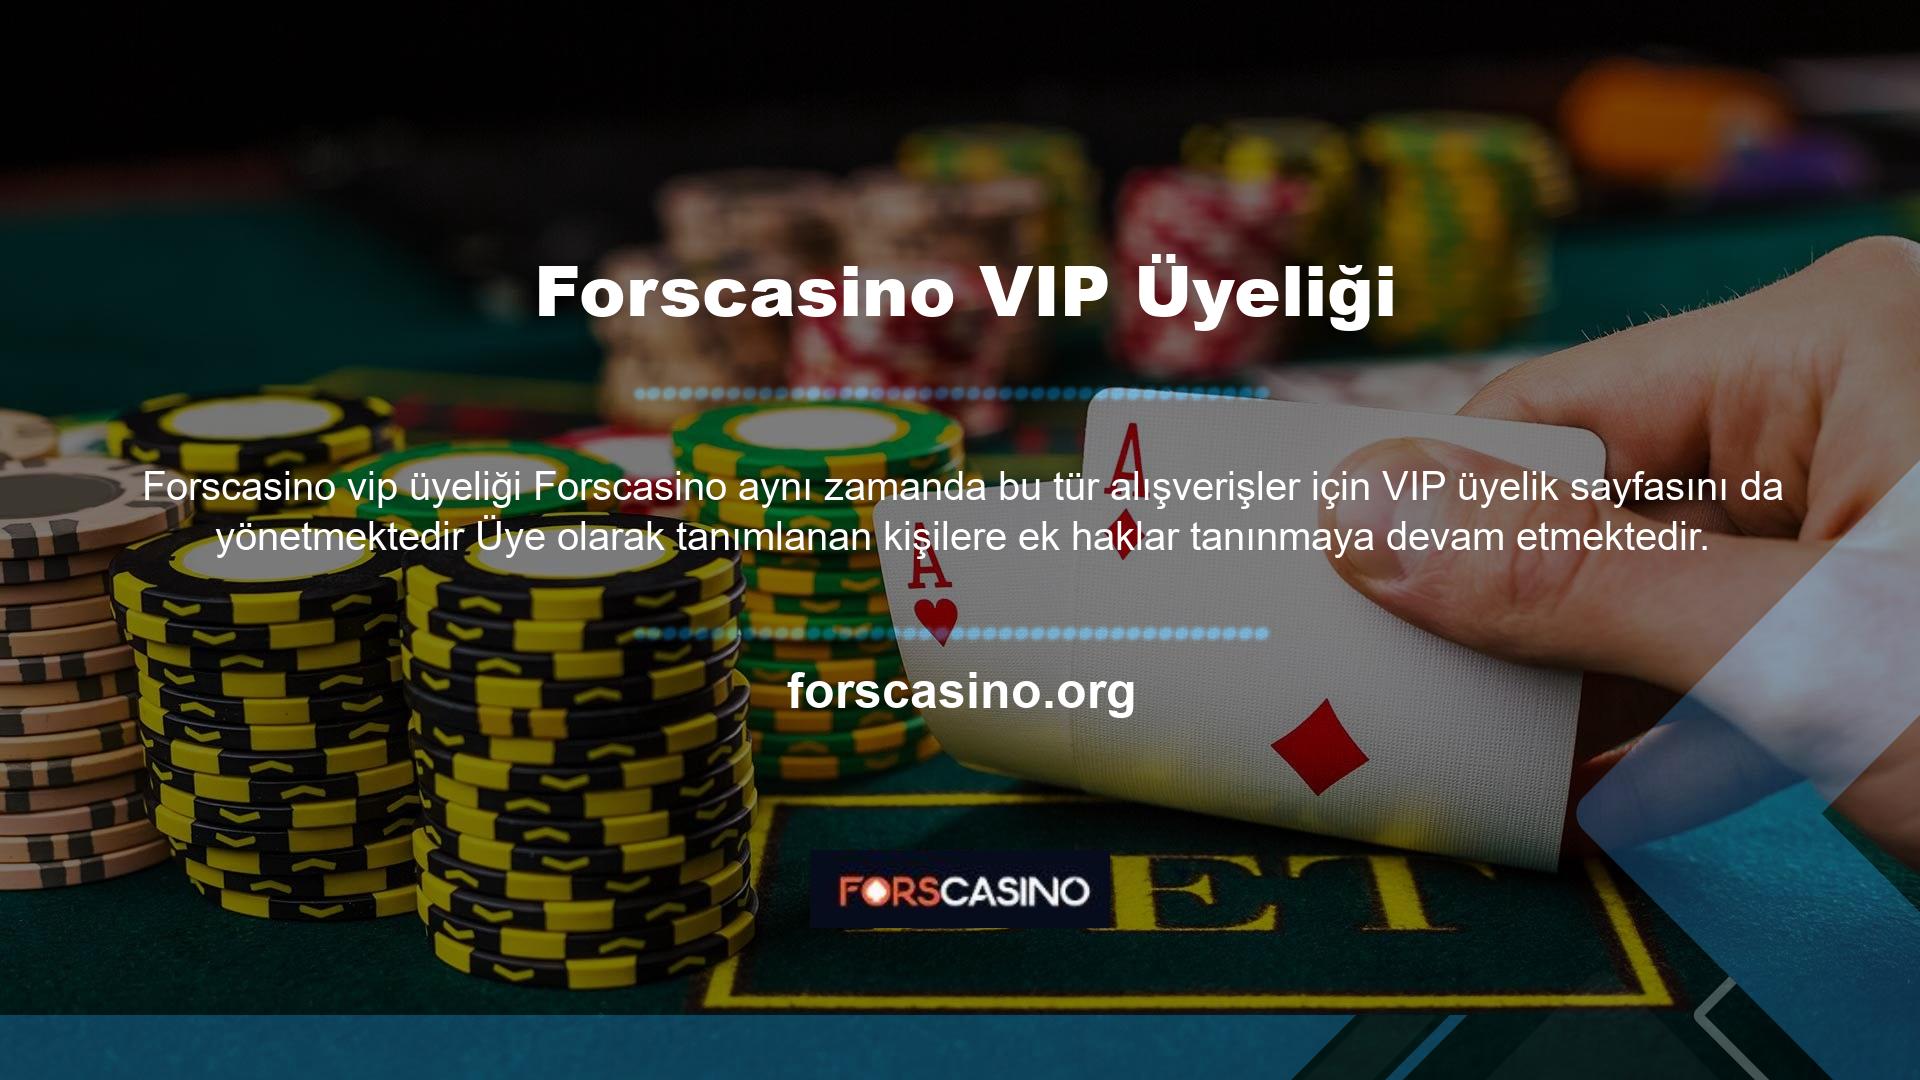 Forscasino üyelik süreci tamamlandı ve VIP üye olmak için doğrudan yardım talep edebilirsiniz